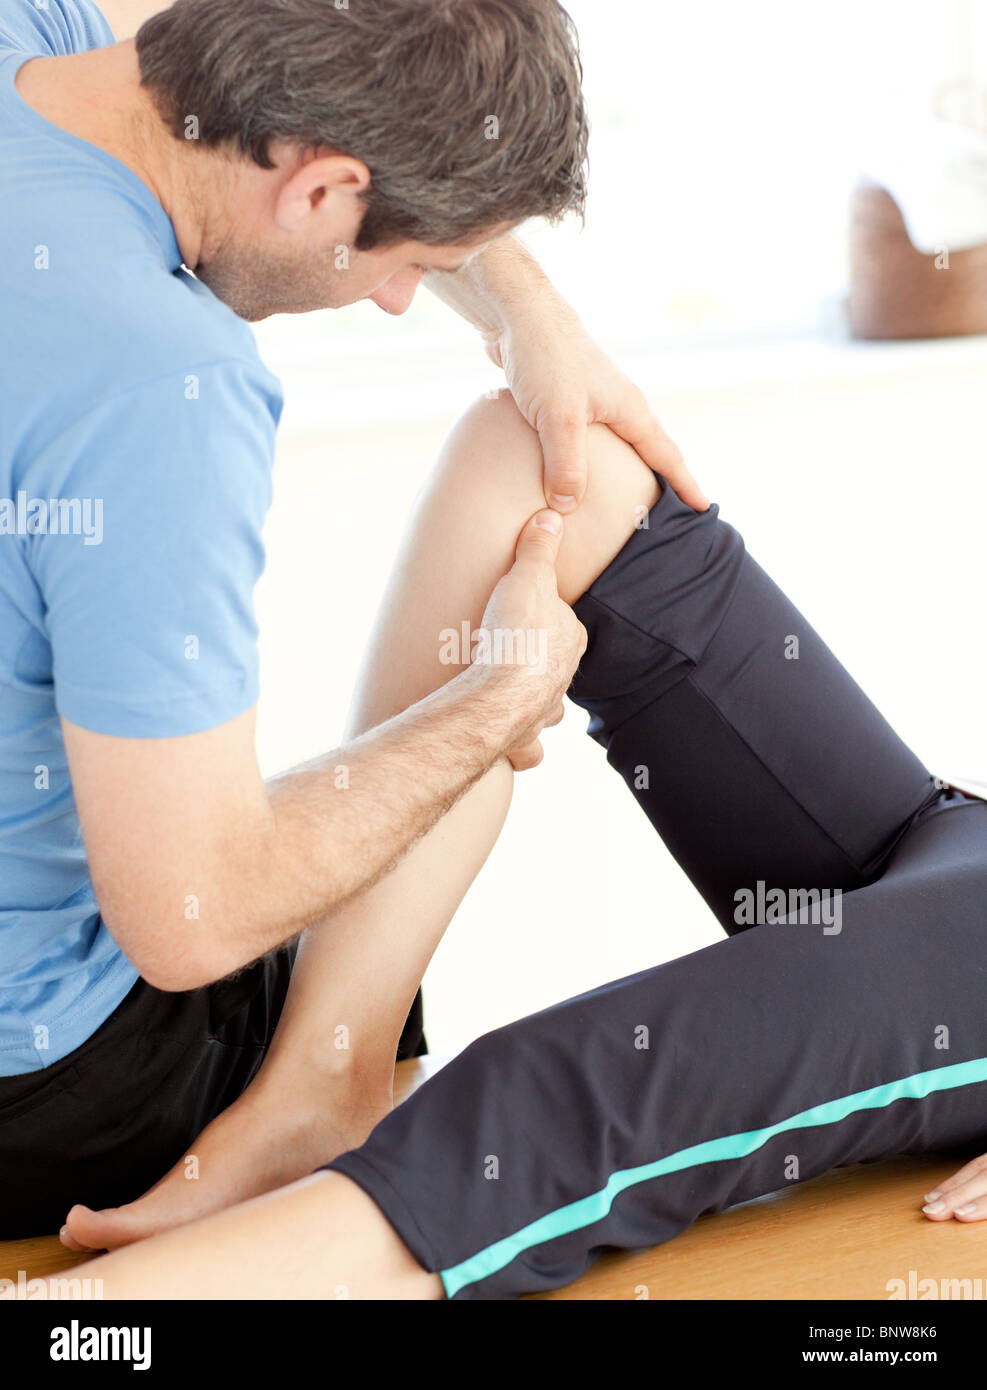 Ein reifer Mann tut eine Massage in Nahaufnahme Stockfoto